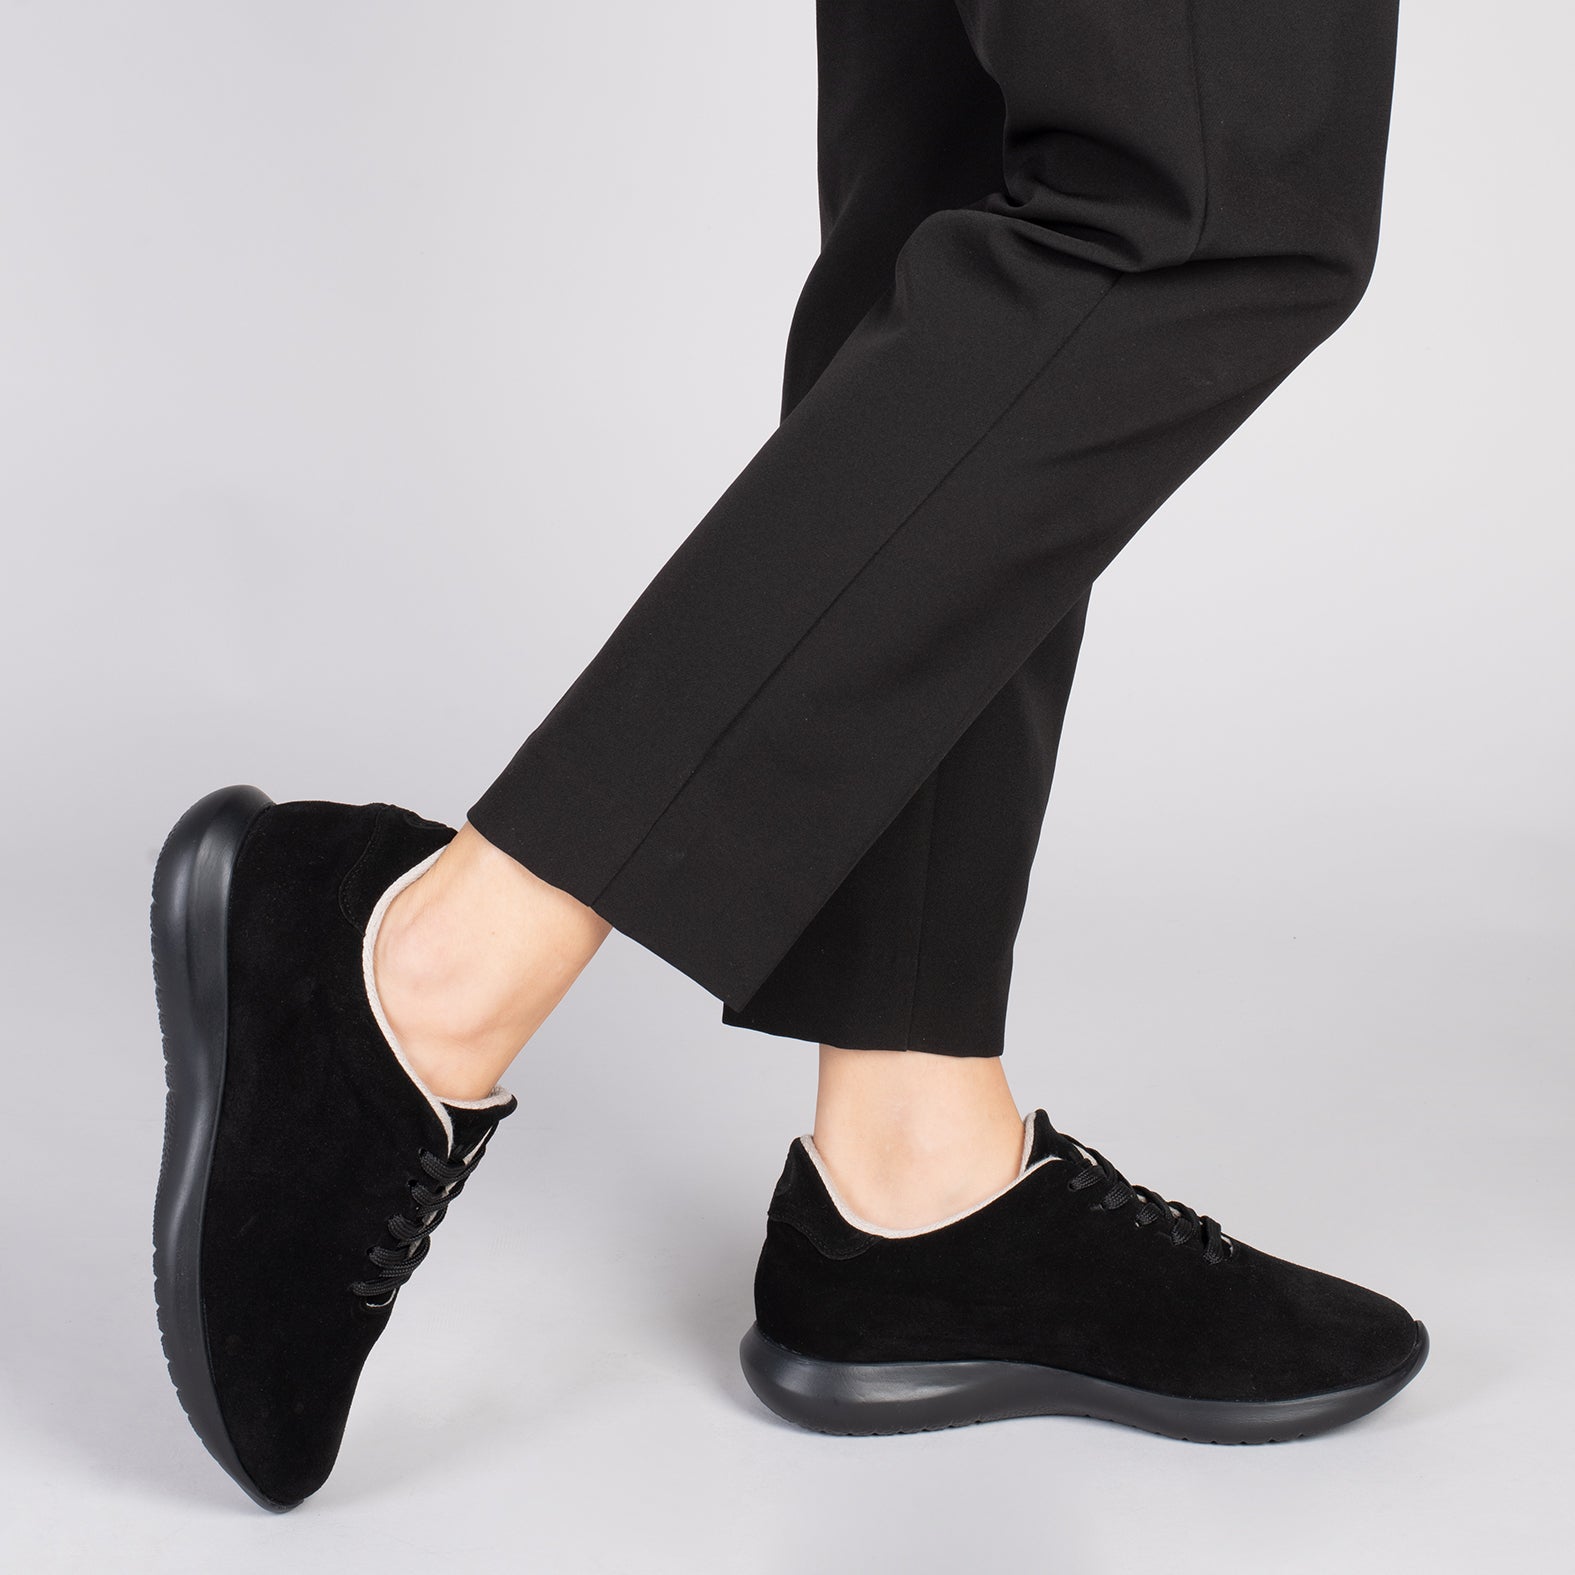 WALK – Zapatillas cómodas de mujer NEGRO/NEGRO